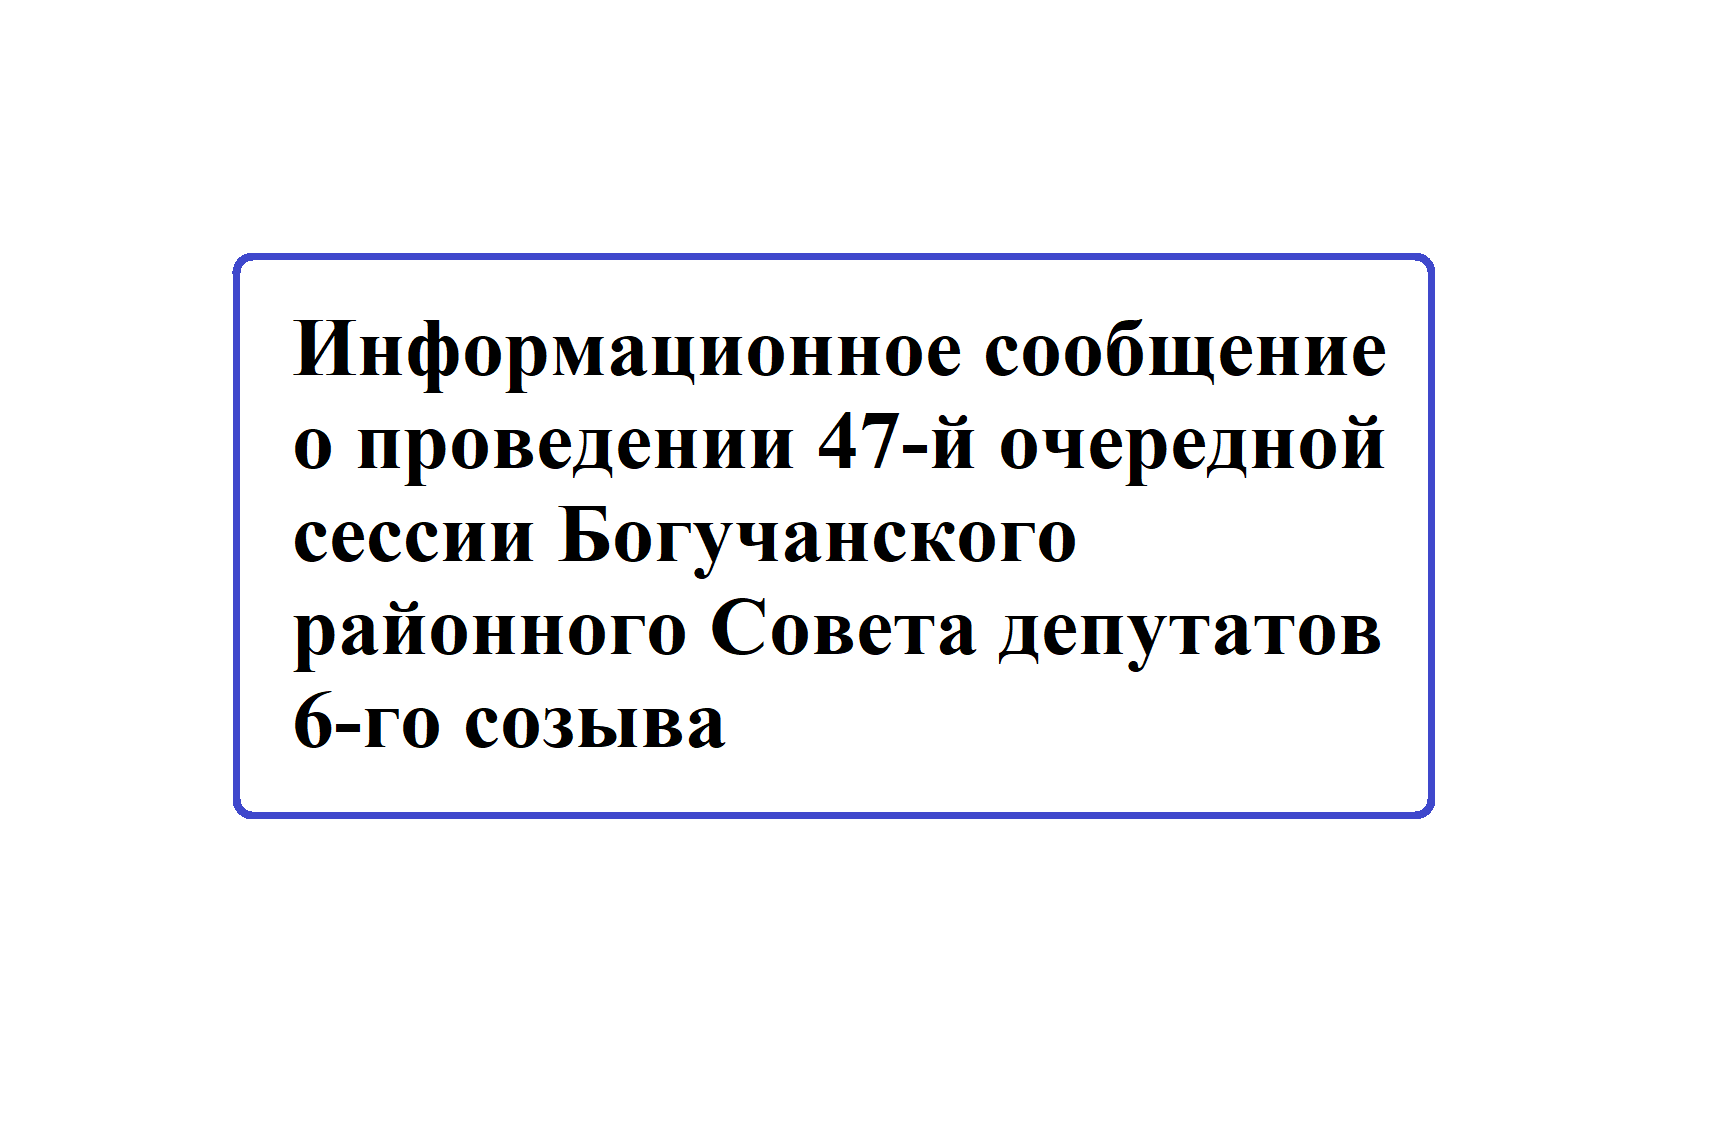 Информационное сообщение о проведении 47-й очередной сессии Богучанского районного Совета депутатов 6-го созыва.